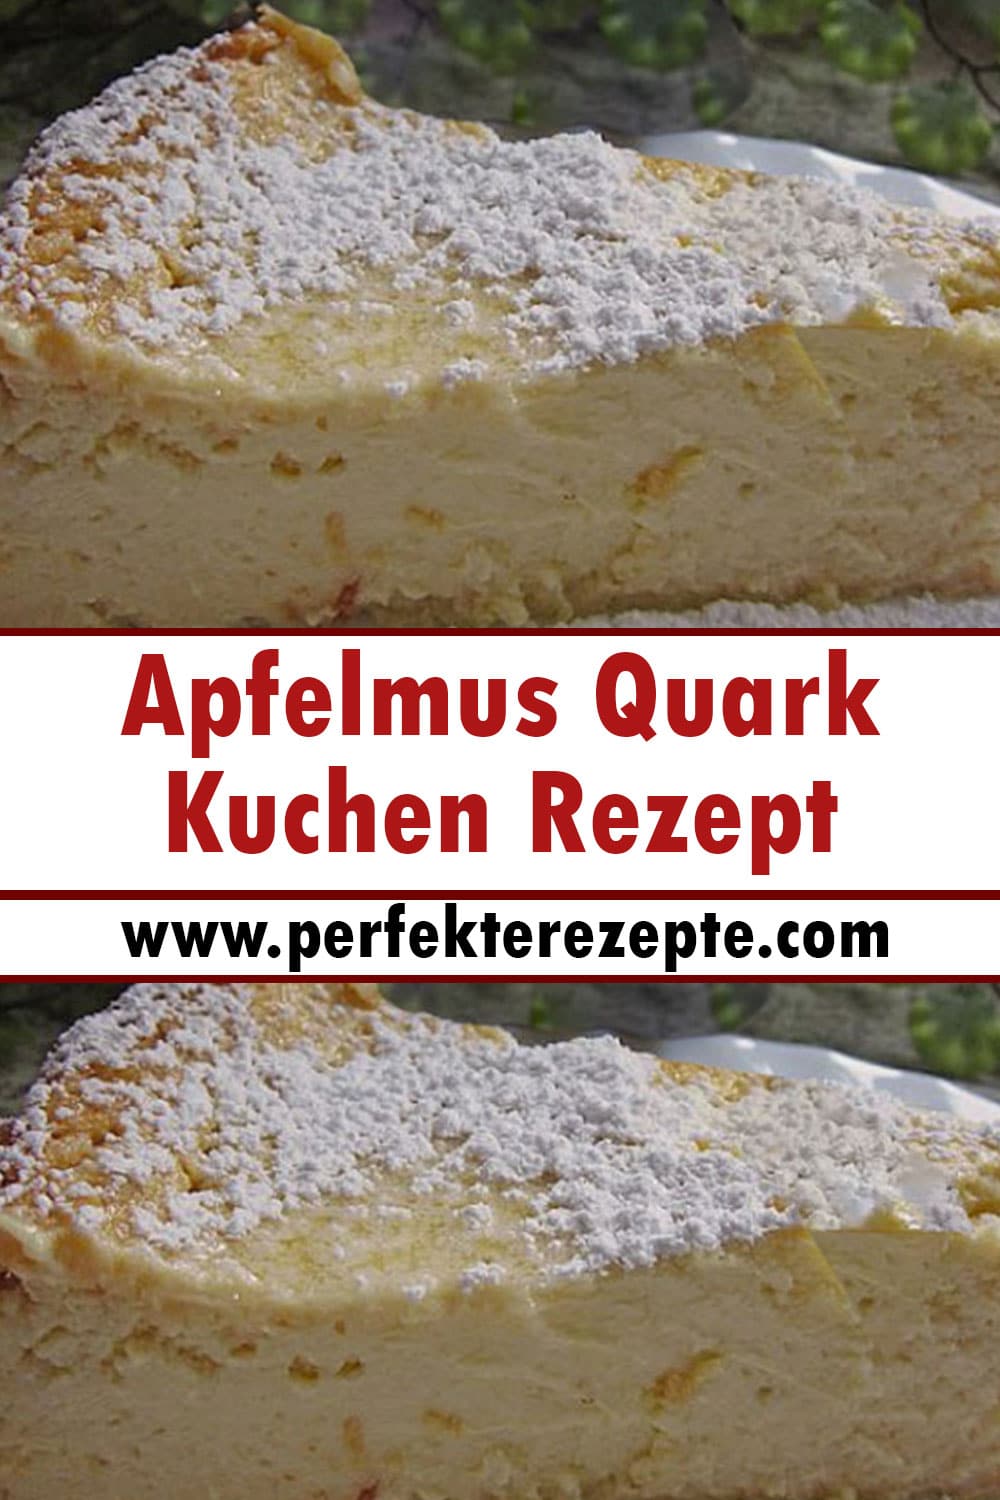 Apfelmus Quark Kuchen Rezept